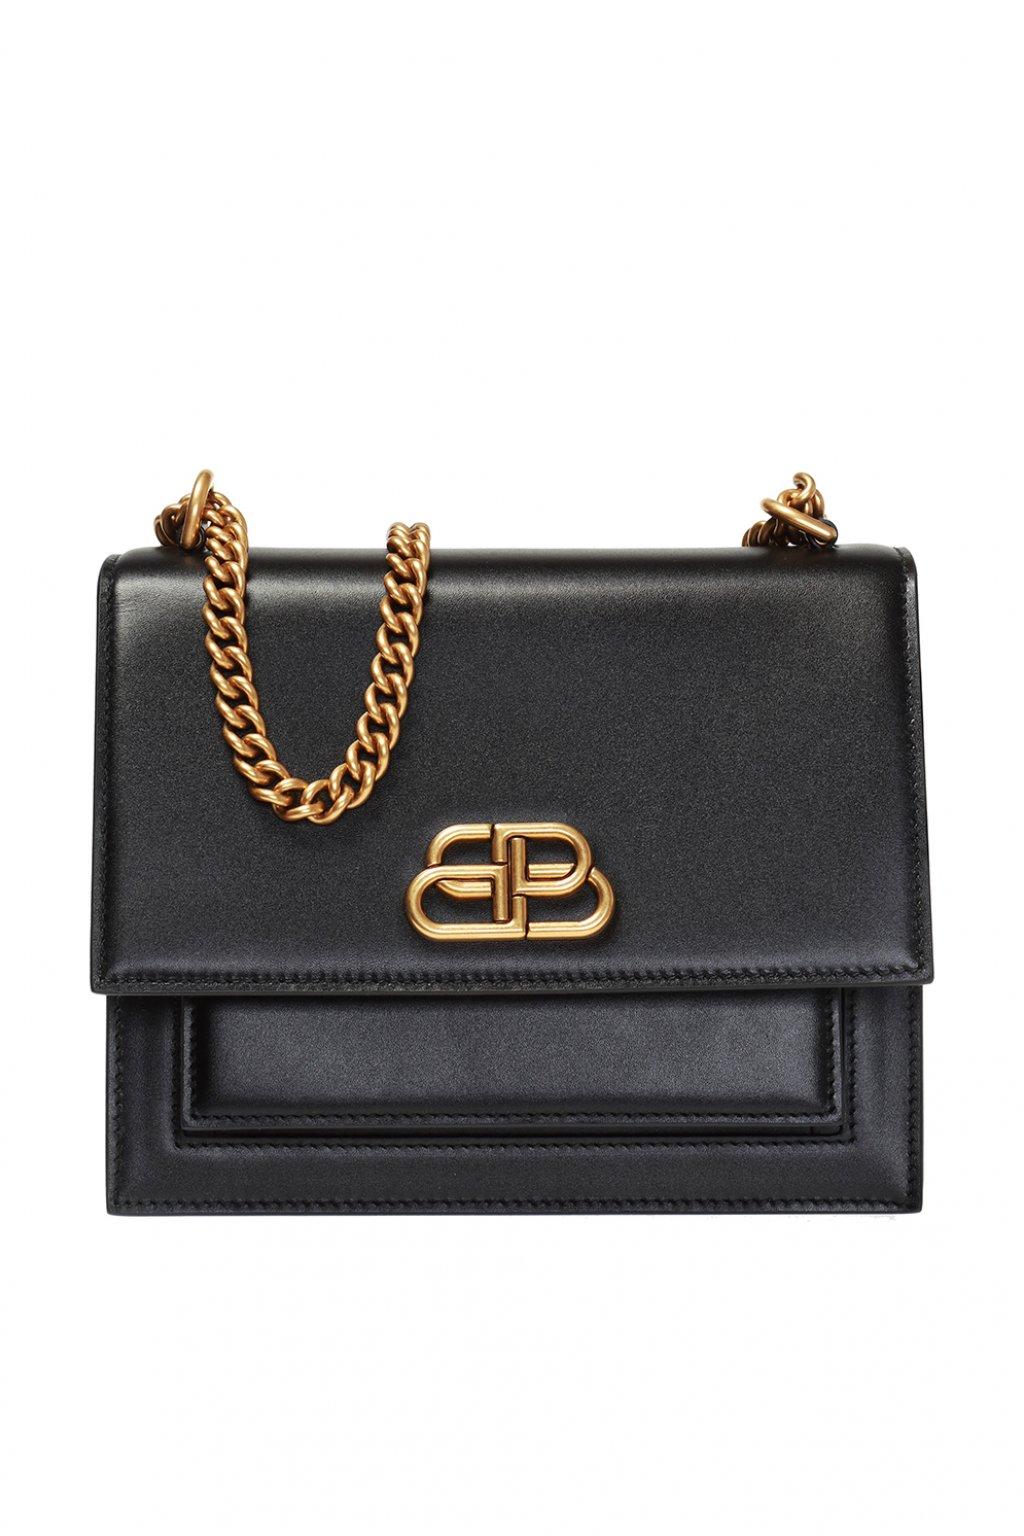 Balenciaga Leather 'sharp' Branded Shoulder Bag in Black - Lyst